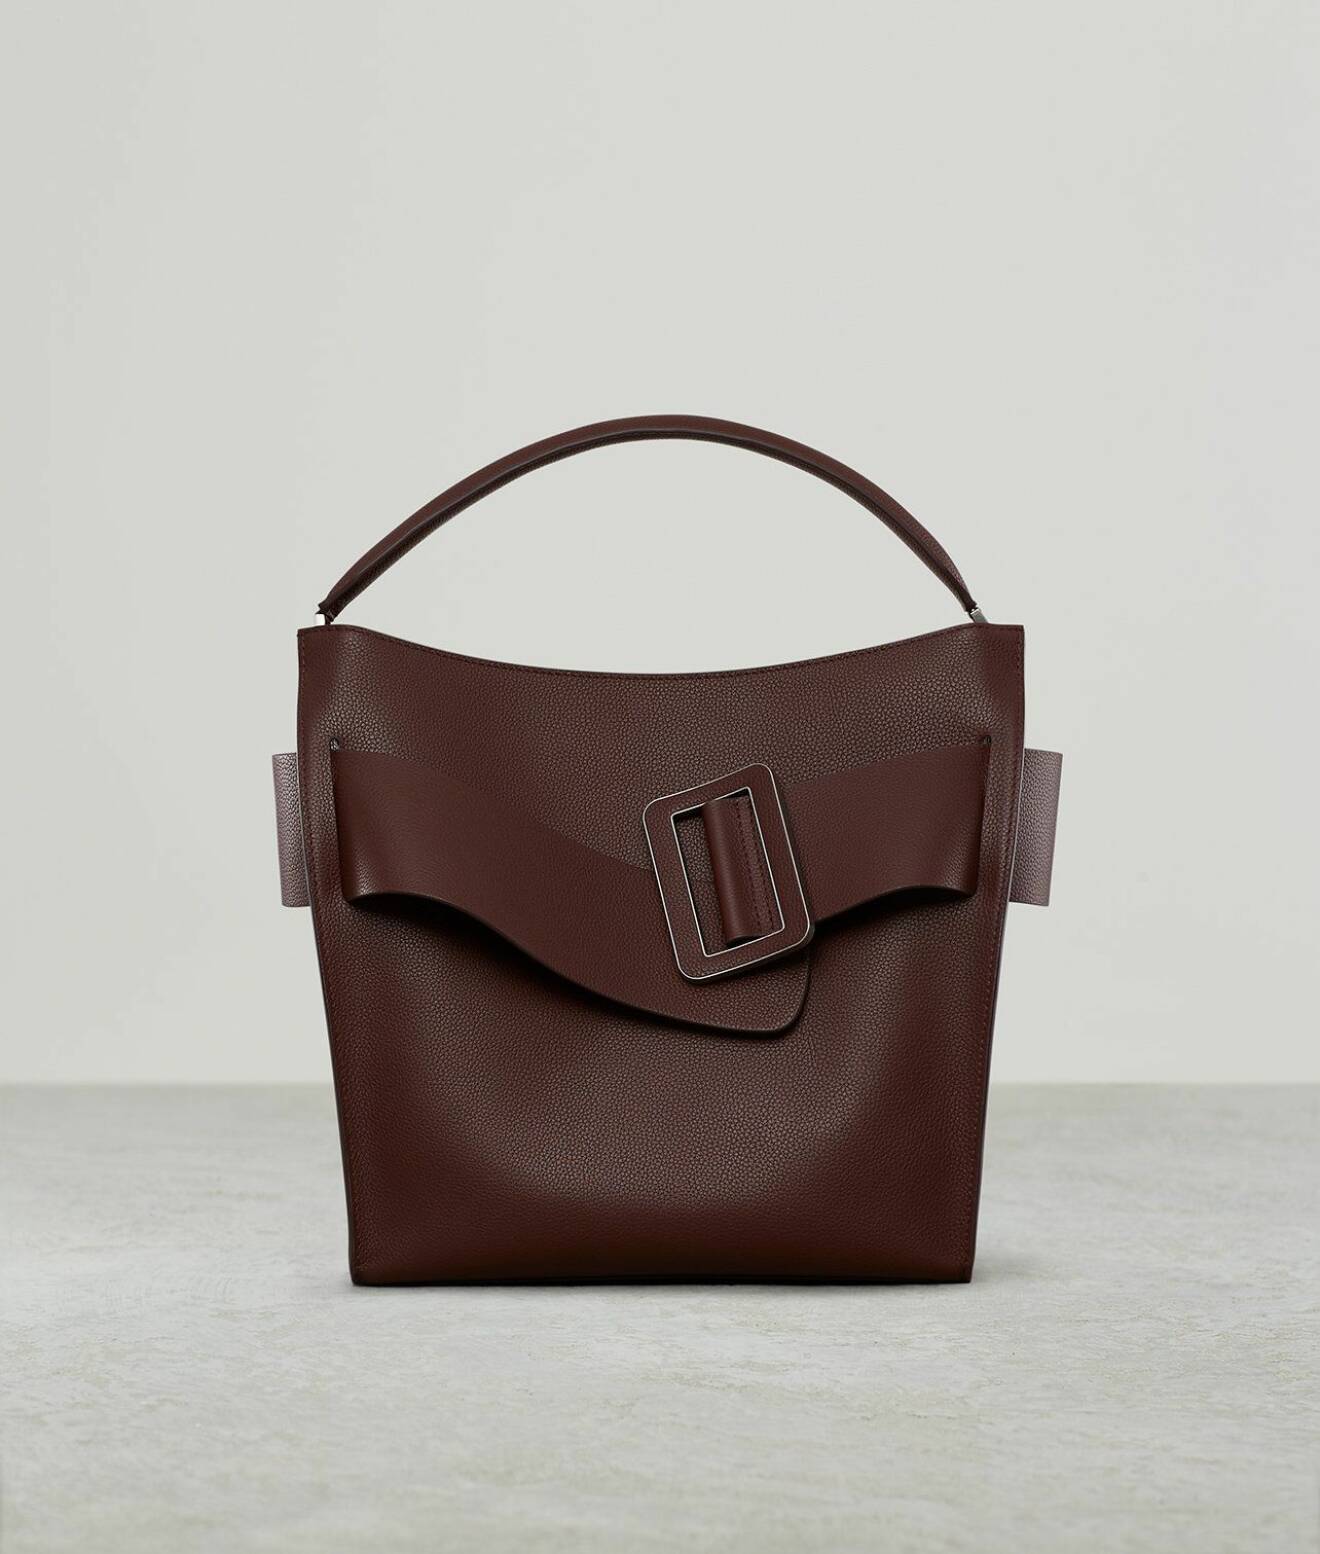 Skinnväska i brunrött med ett brett band med spänne över. Modellen heter "Pouch leather clutch" Väska i större modell från Boyy.